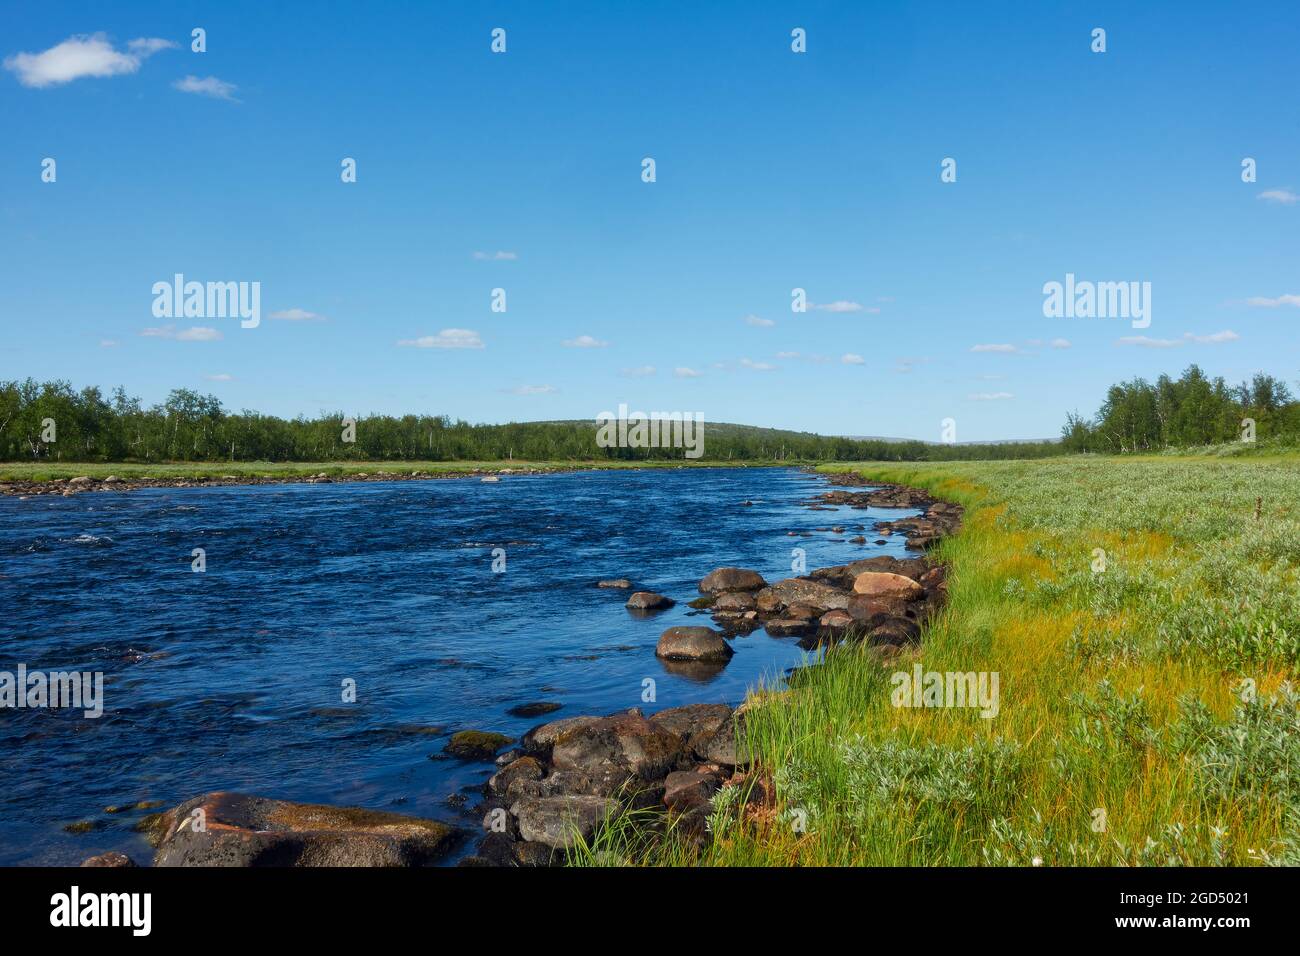 Parte superior del río Lainio en el día soleado a principios de agosto de 2021 situado en el desierto del municipio de Kiruna en el extremo norte de los Swedi Foto de stock